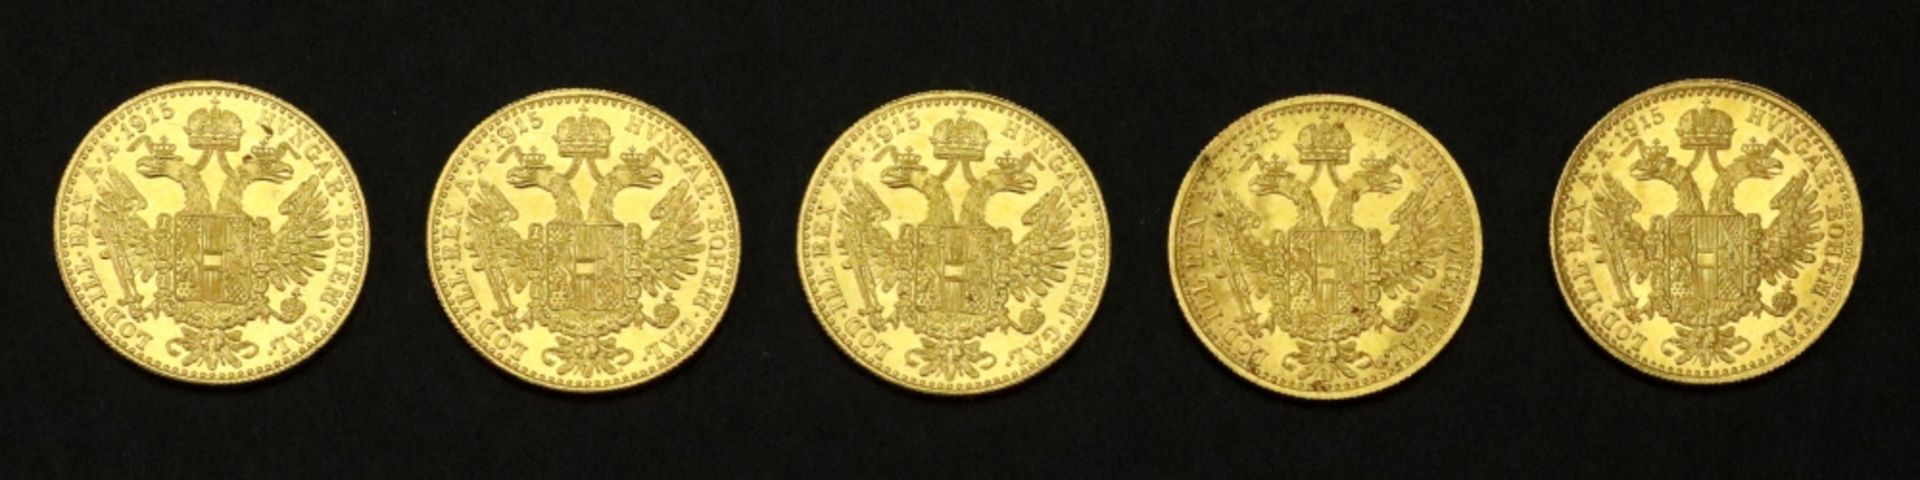 Five Austrian 1915 gold 1 ducat, re-struck, 17.4g.